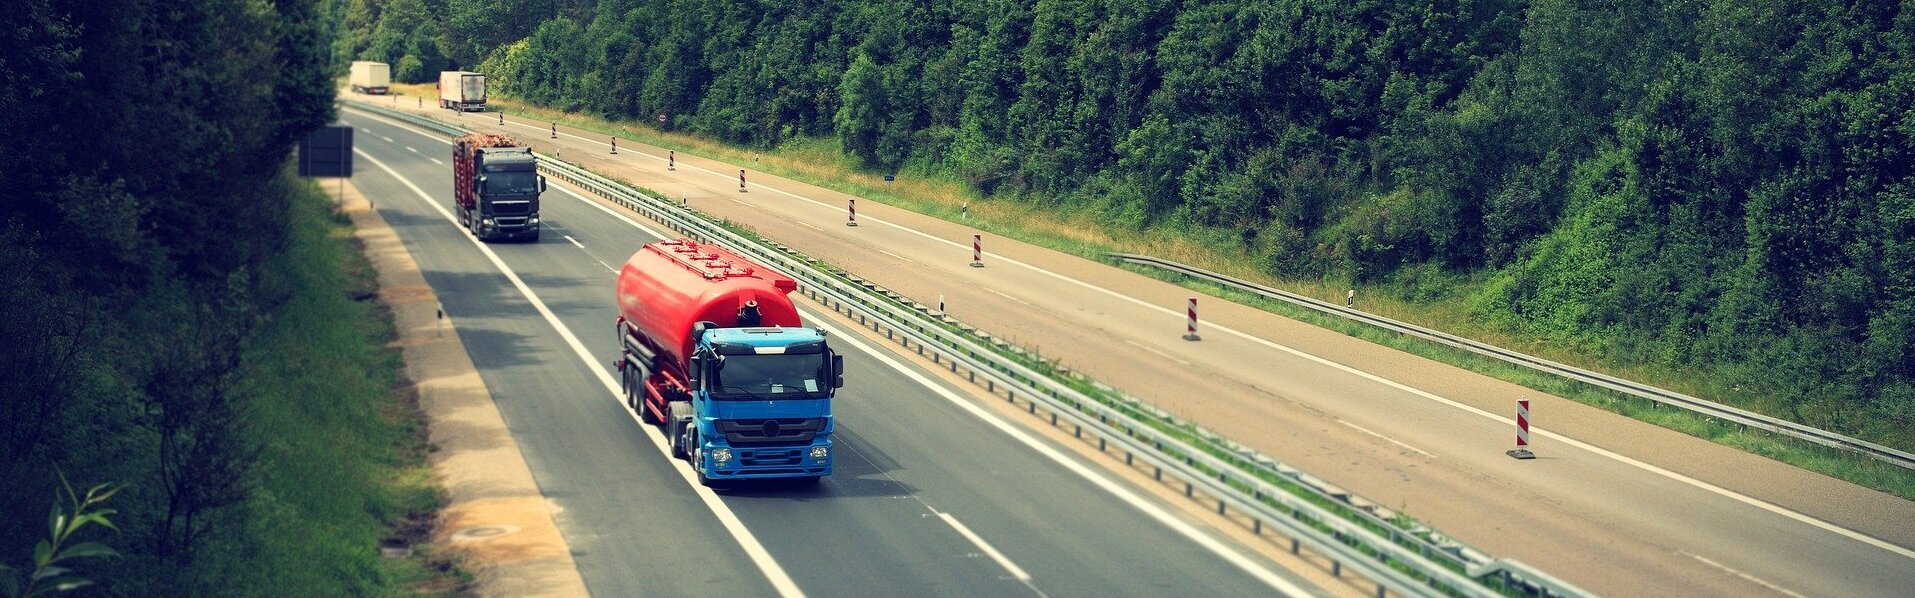 Das Bild zeigt LKWs auf einer Autobahn.